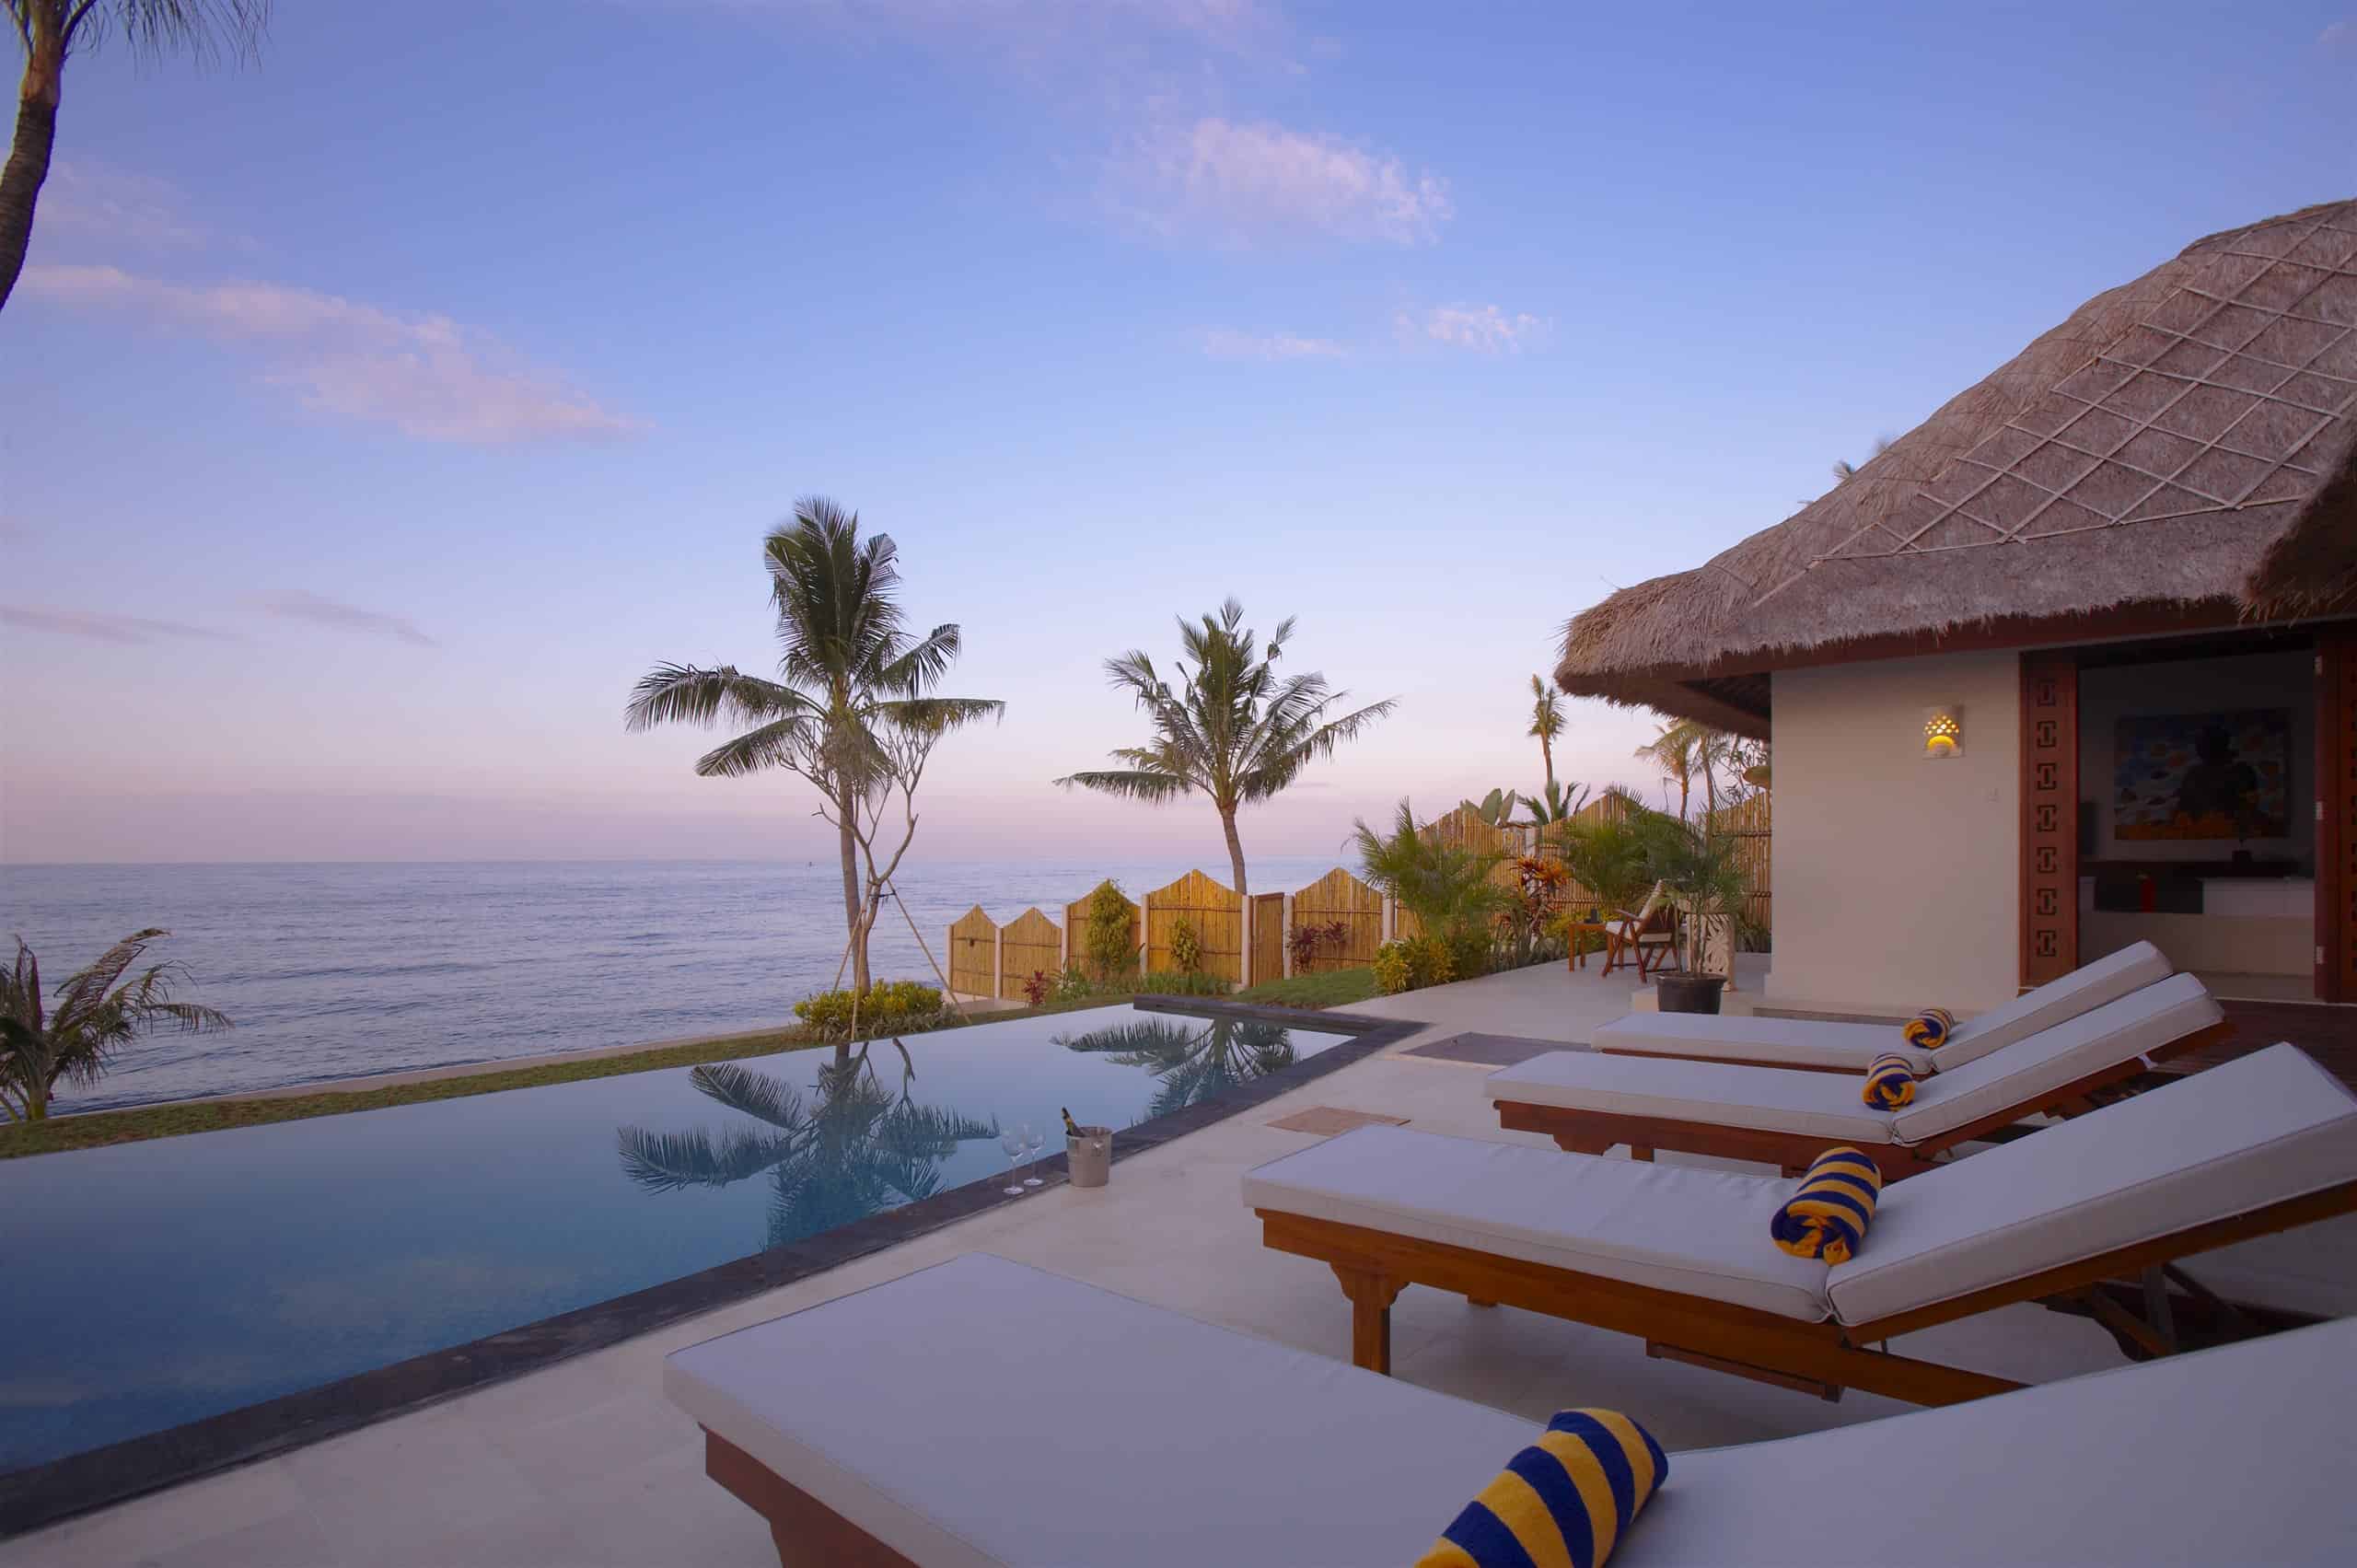 Seaview Oceanfront Resort in Bali